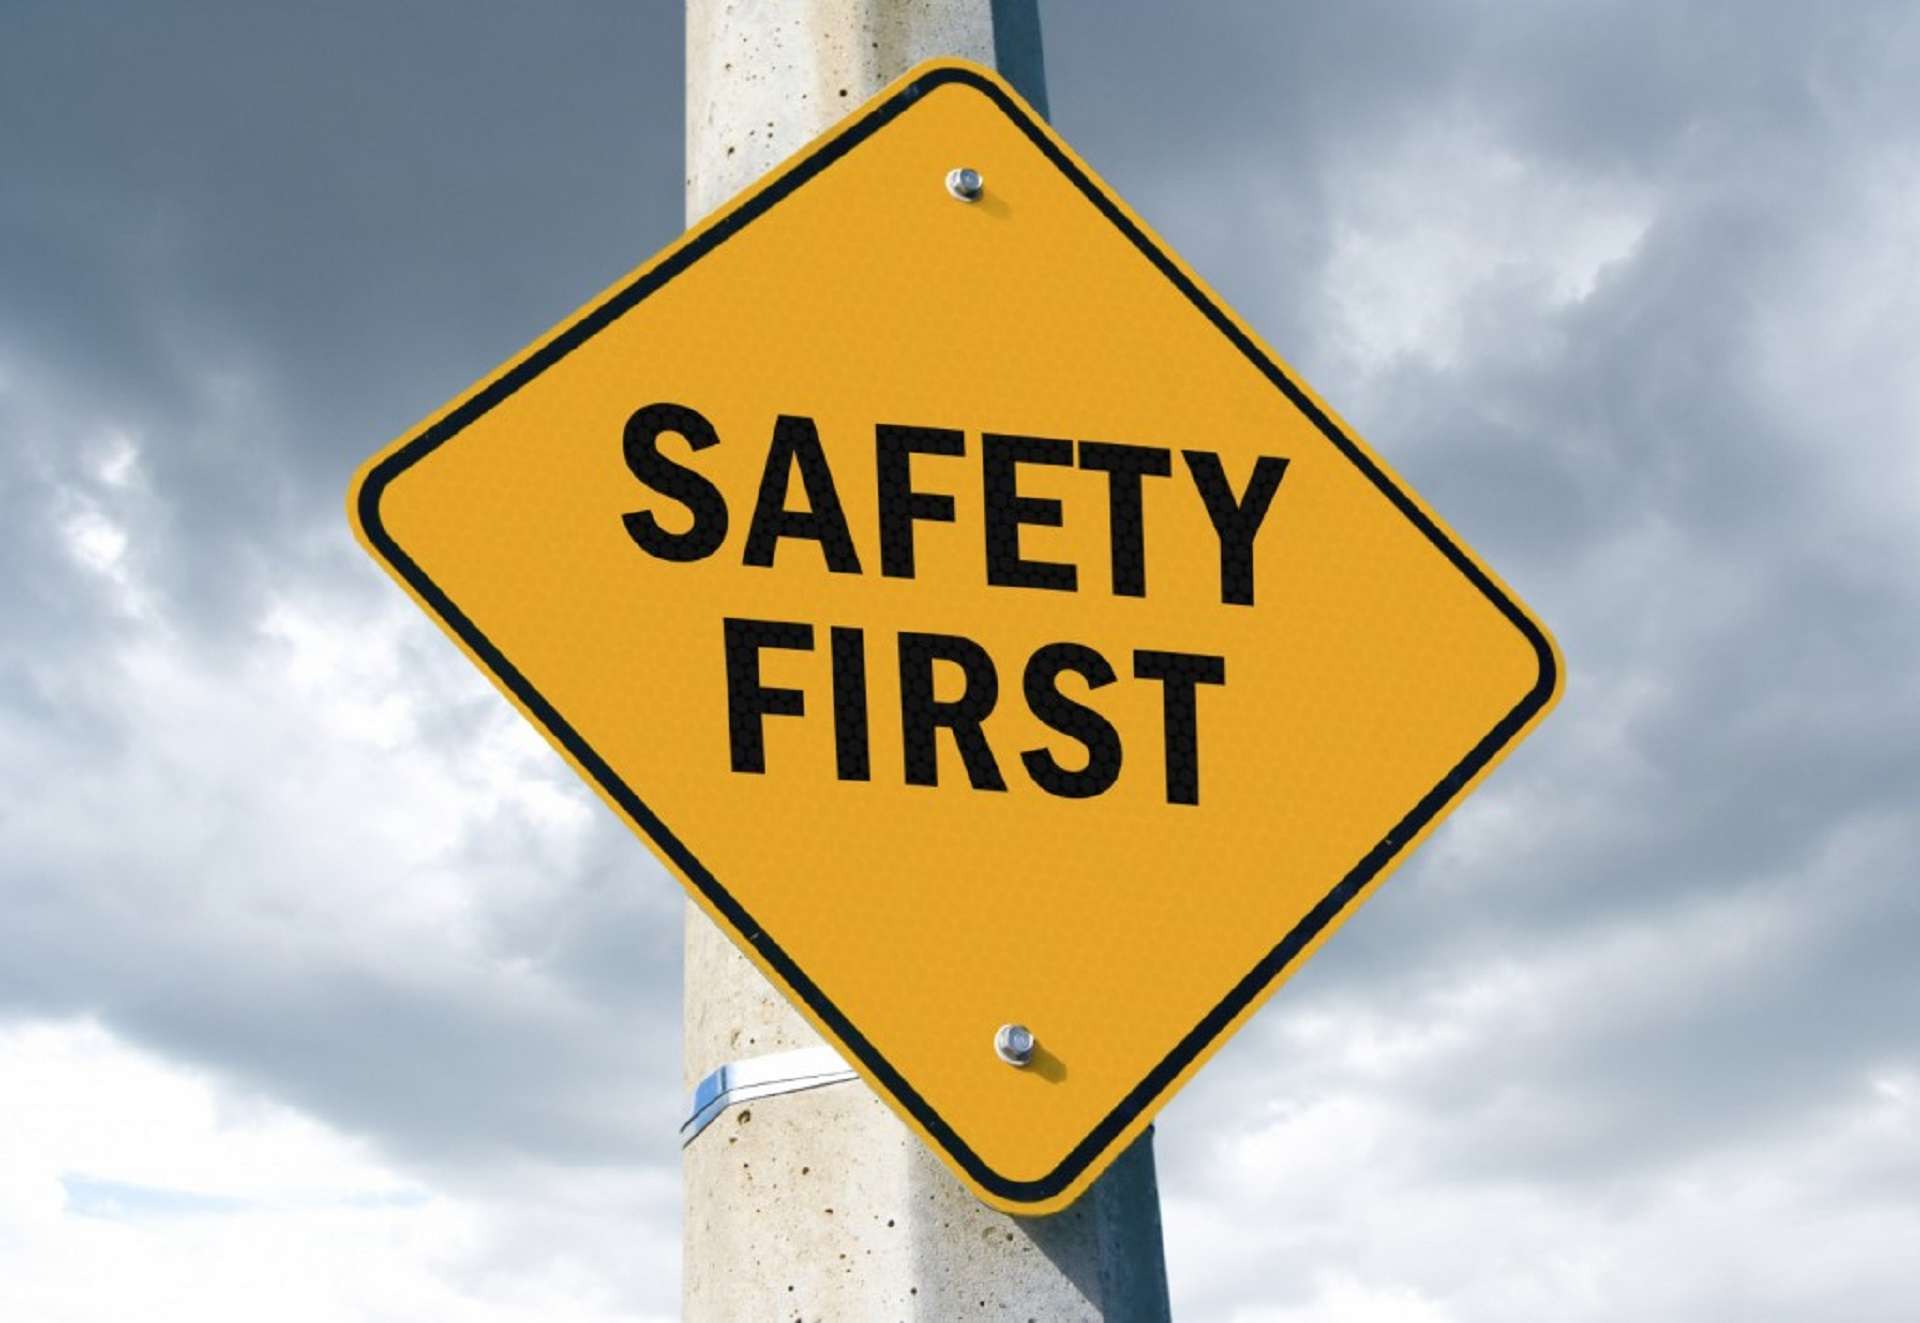 Wetgeving door overheid - verkeersbord 'Safety first'